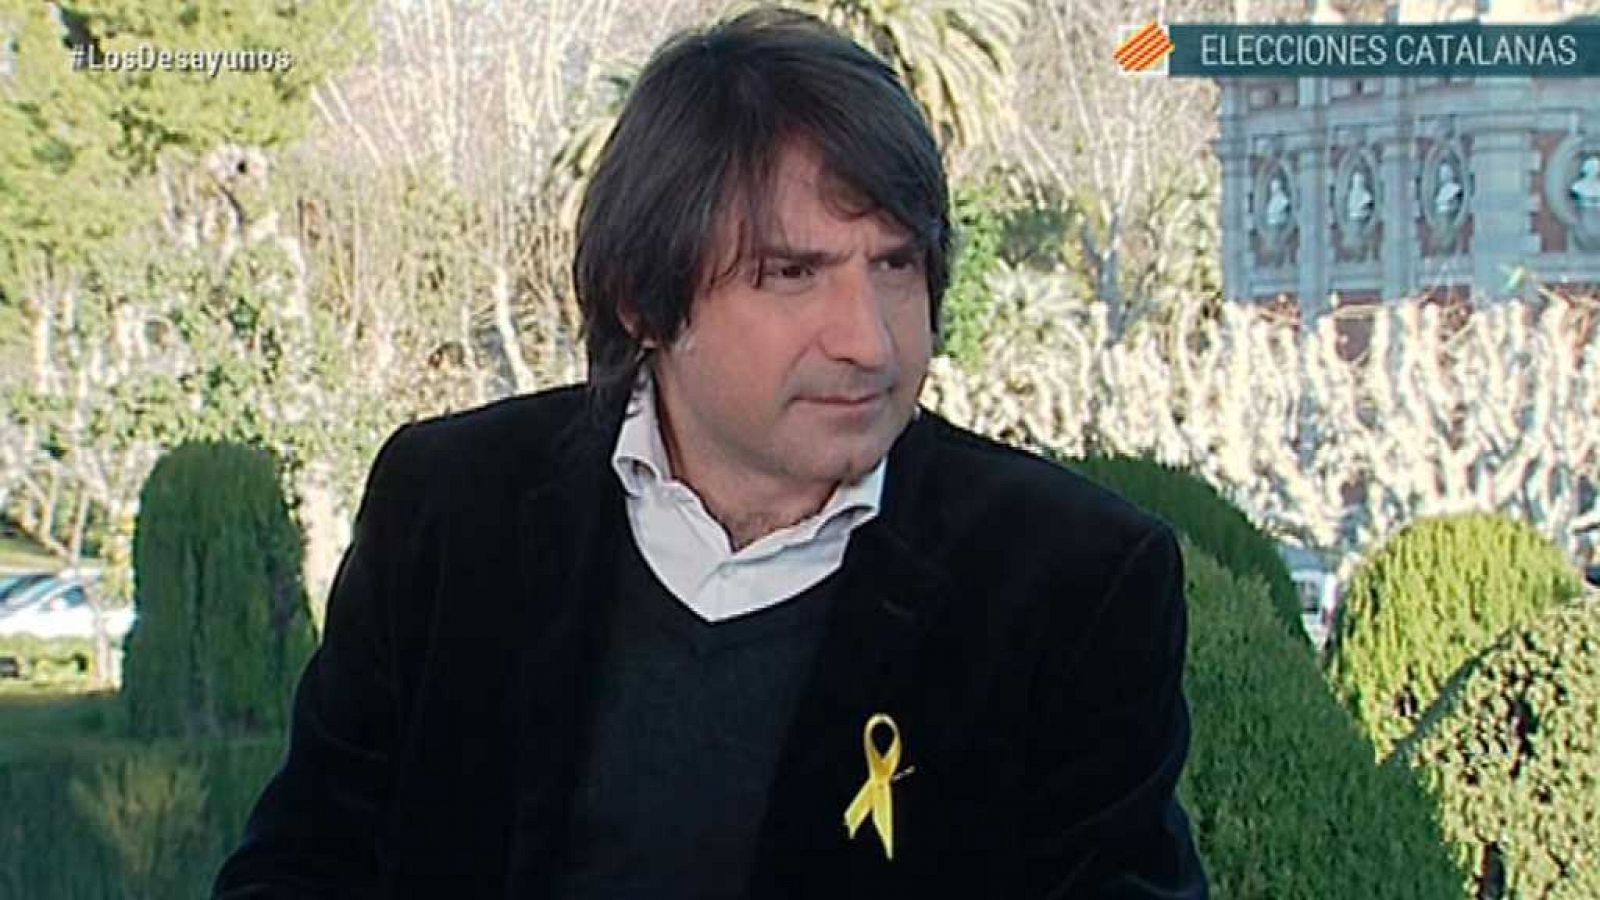 Los desayunos de TVE - Francesc de Dalmases, candidato de Junts per Catalunya